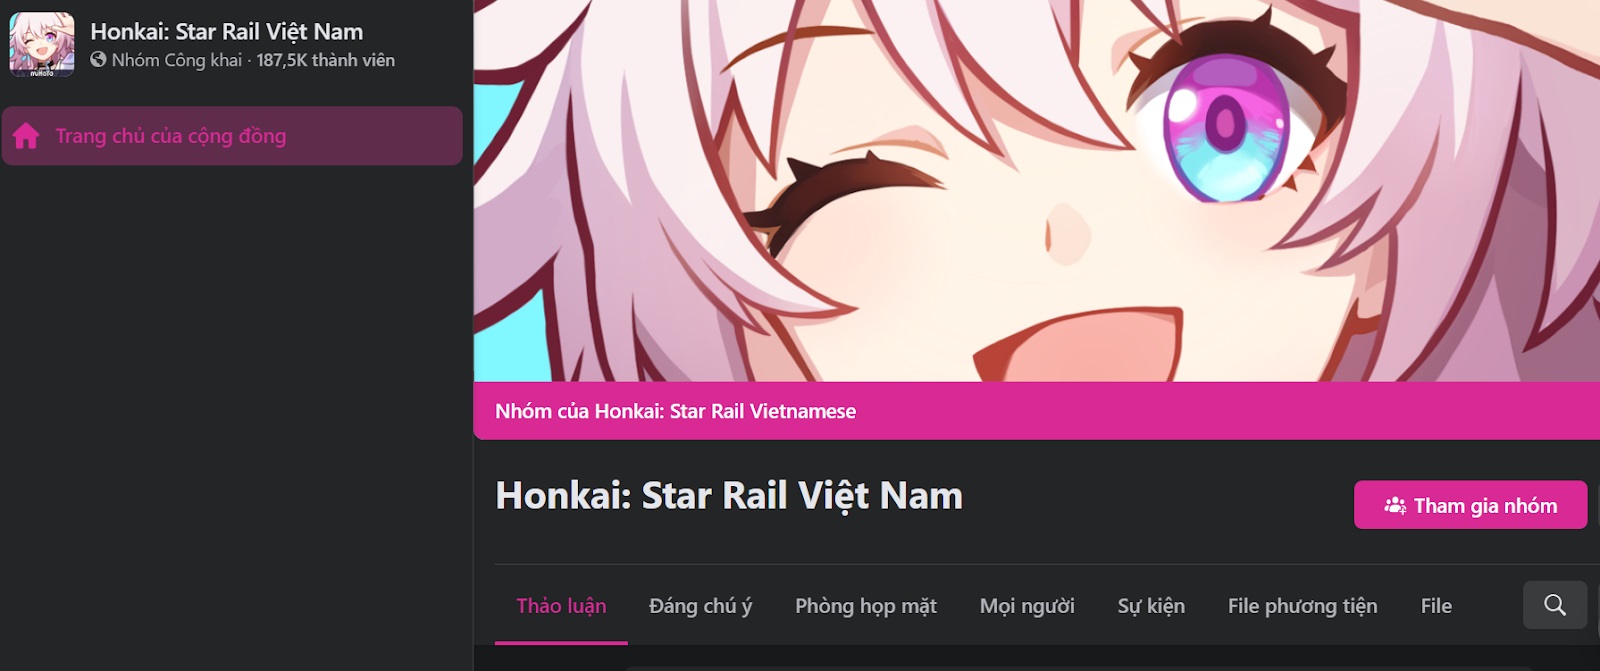 code honkai star rail 10 jpg